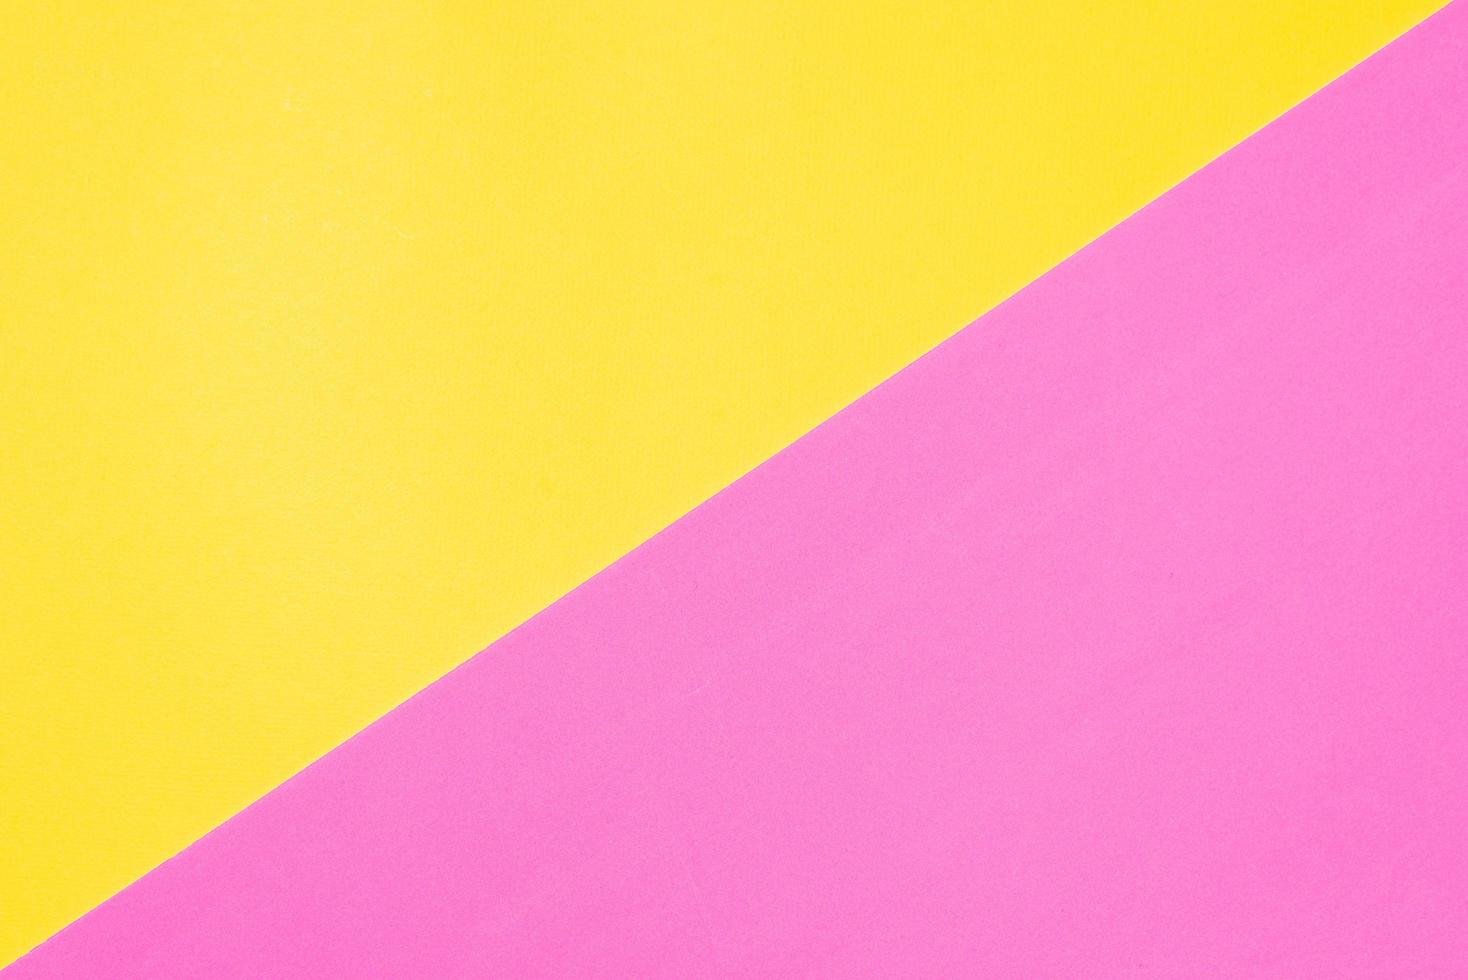 strukturierter hintergrund des zweifarbigen papiers. gelber und rosa diagonaler geometrischer hintergrund. foto